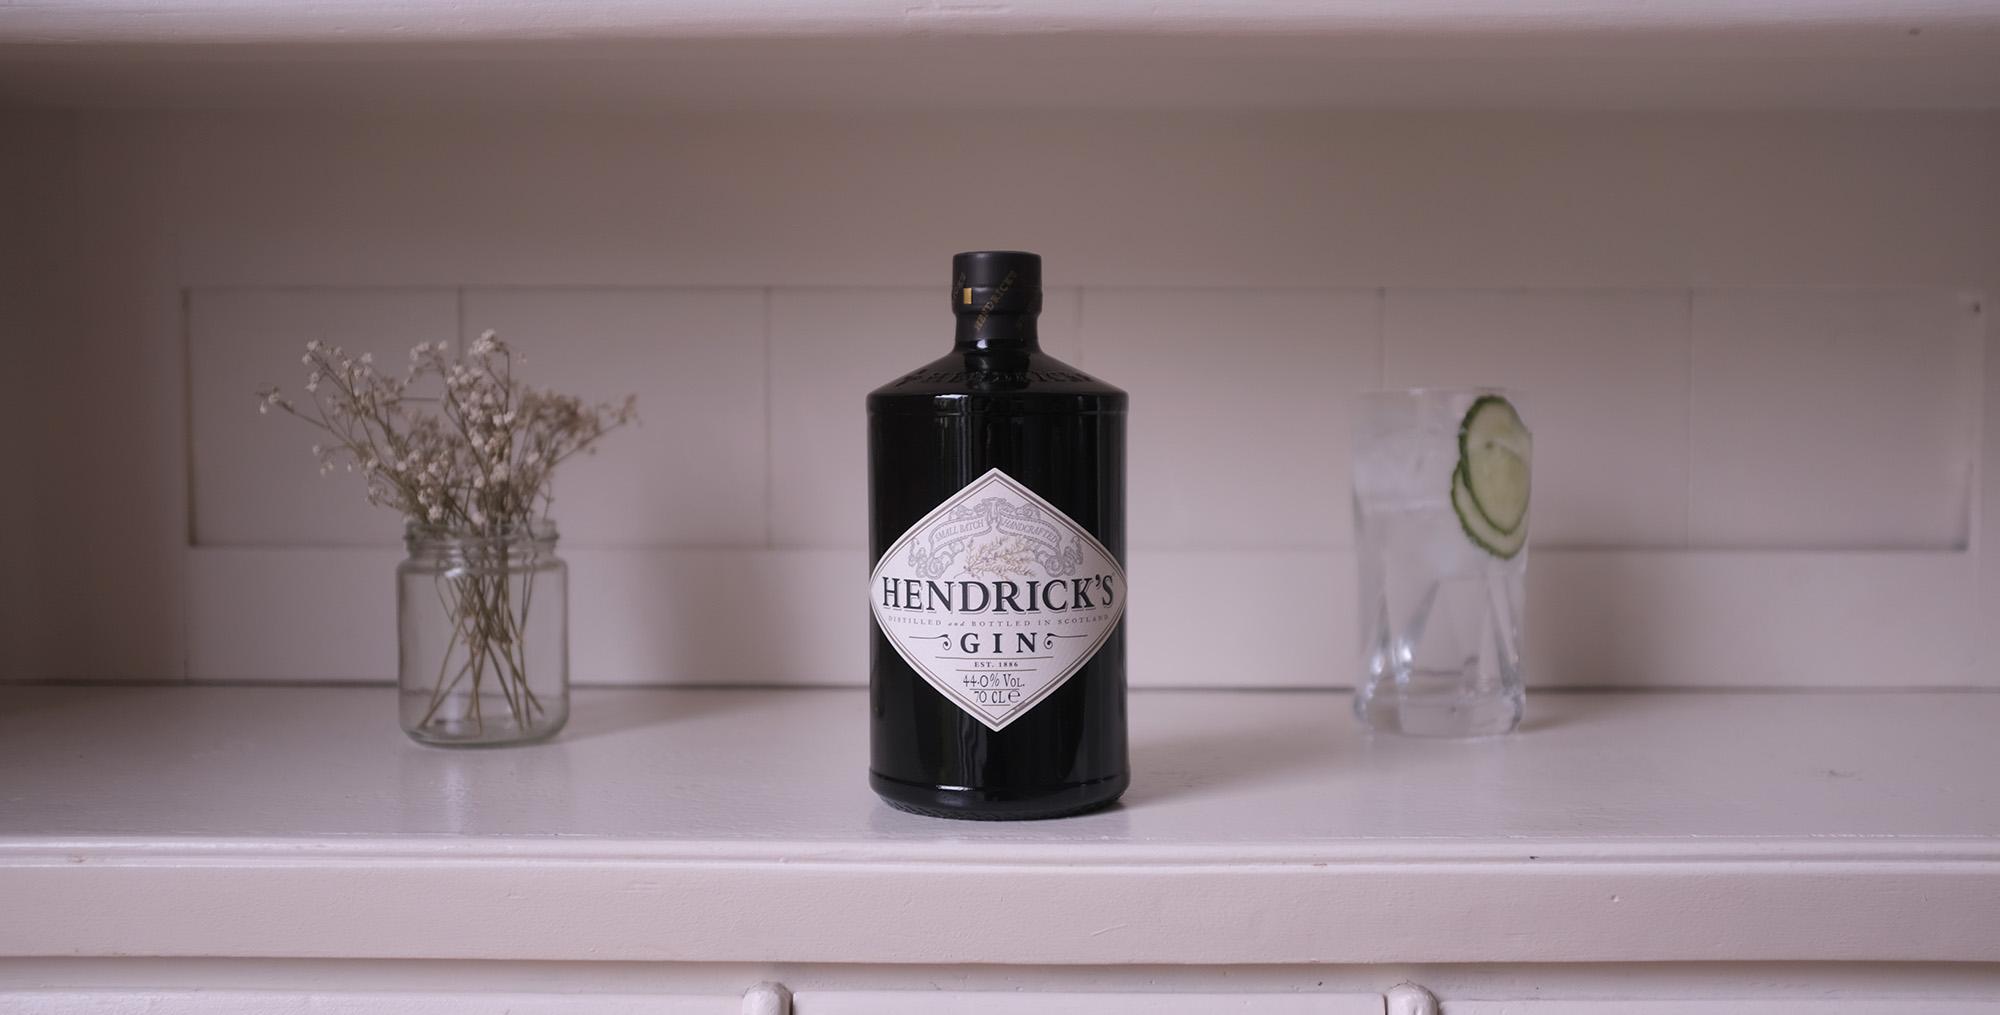 ntdecke den einzigartigen Geschmack von Hendricks Gin - handgefertigt aus erlesenen Botanicals und mit einem Alkoholgehalt von 44%. Perfekt für besondere Anlässe oder einen entspannten Abend mit Freunden.